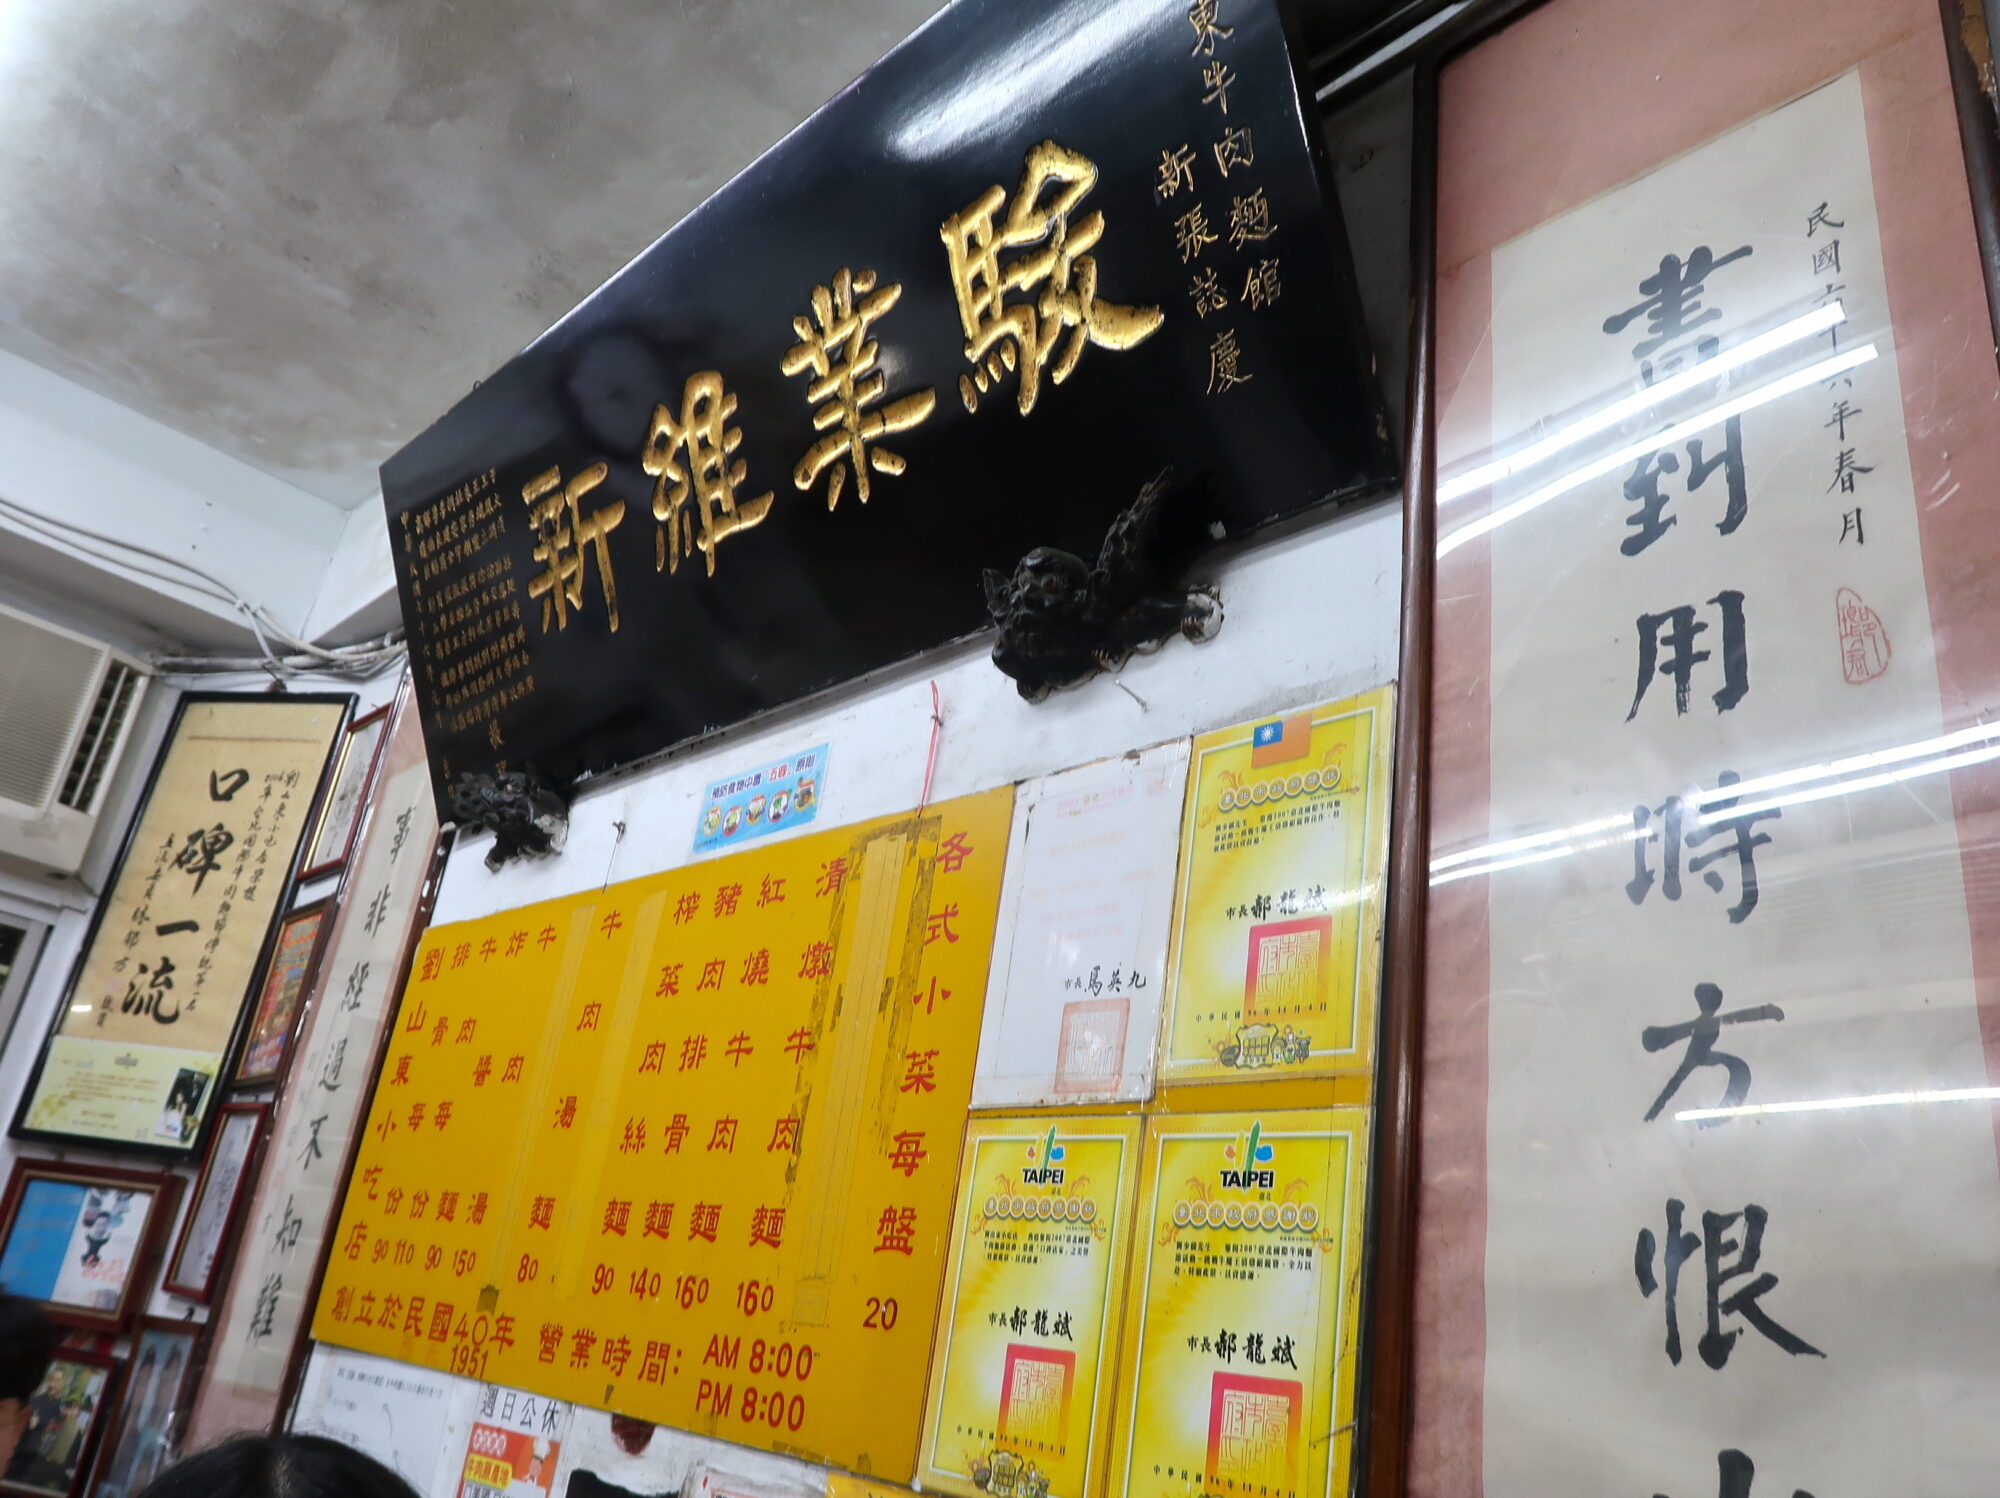 劉山東小吃店「店内の壁にあるメニュー表」